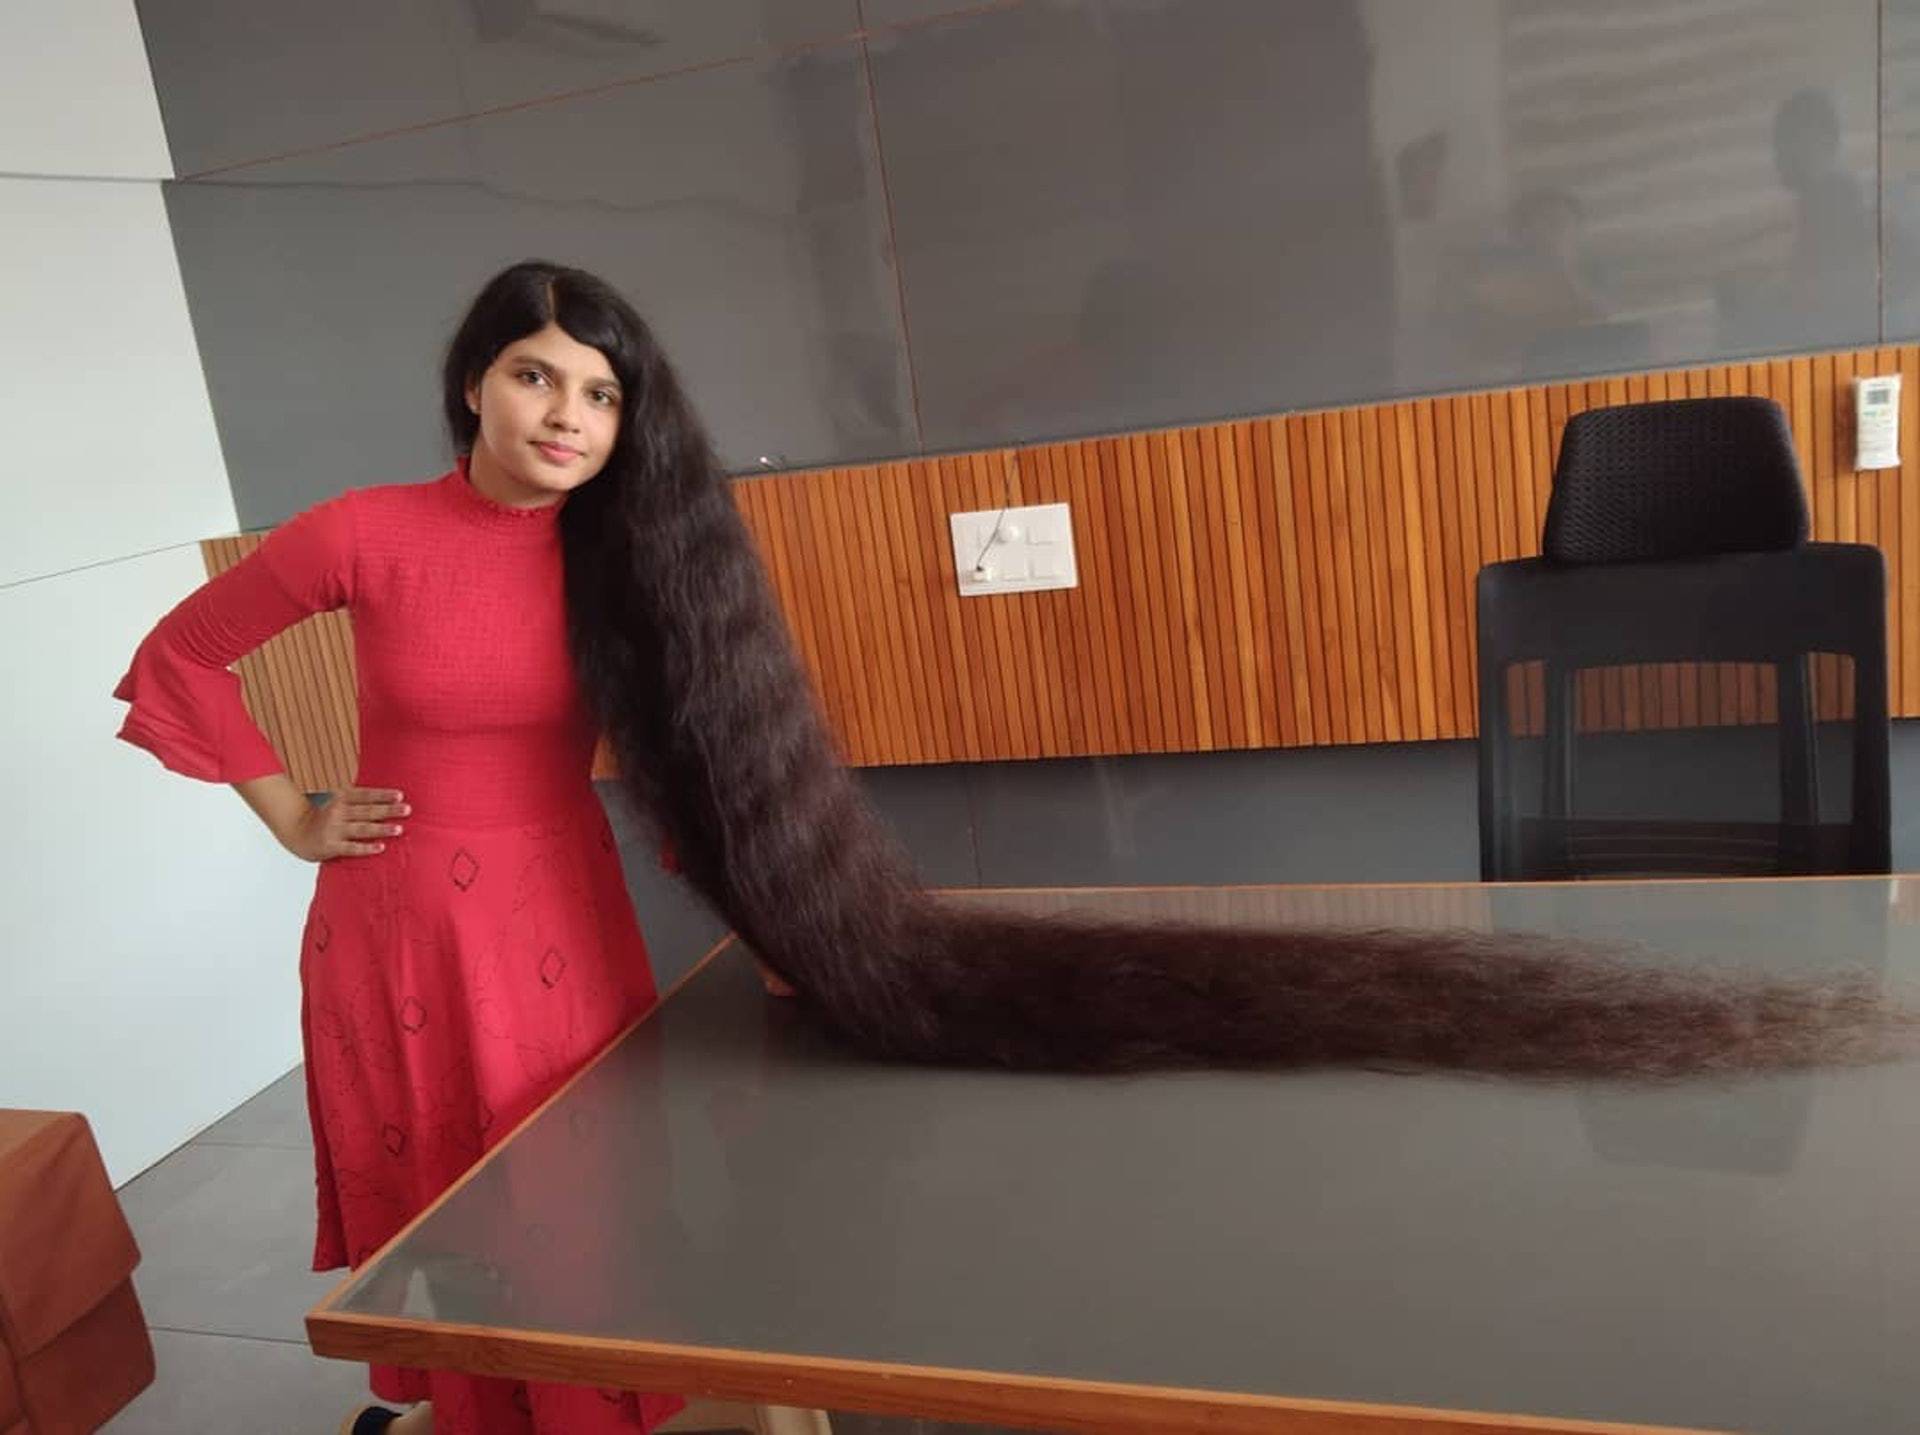 印度18岁少女拥2米长头发创世界纪录,为激励他人剪发捐给博物馆